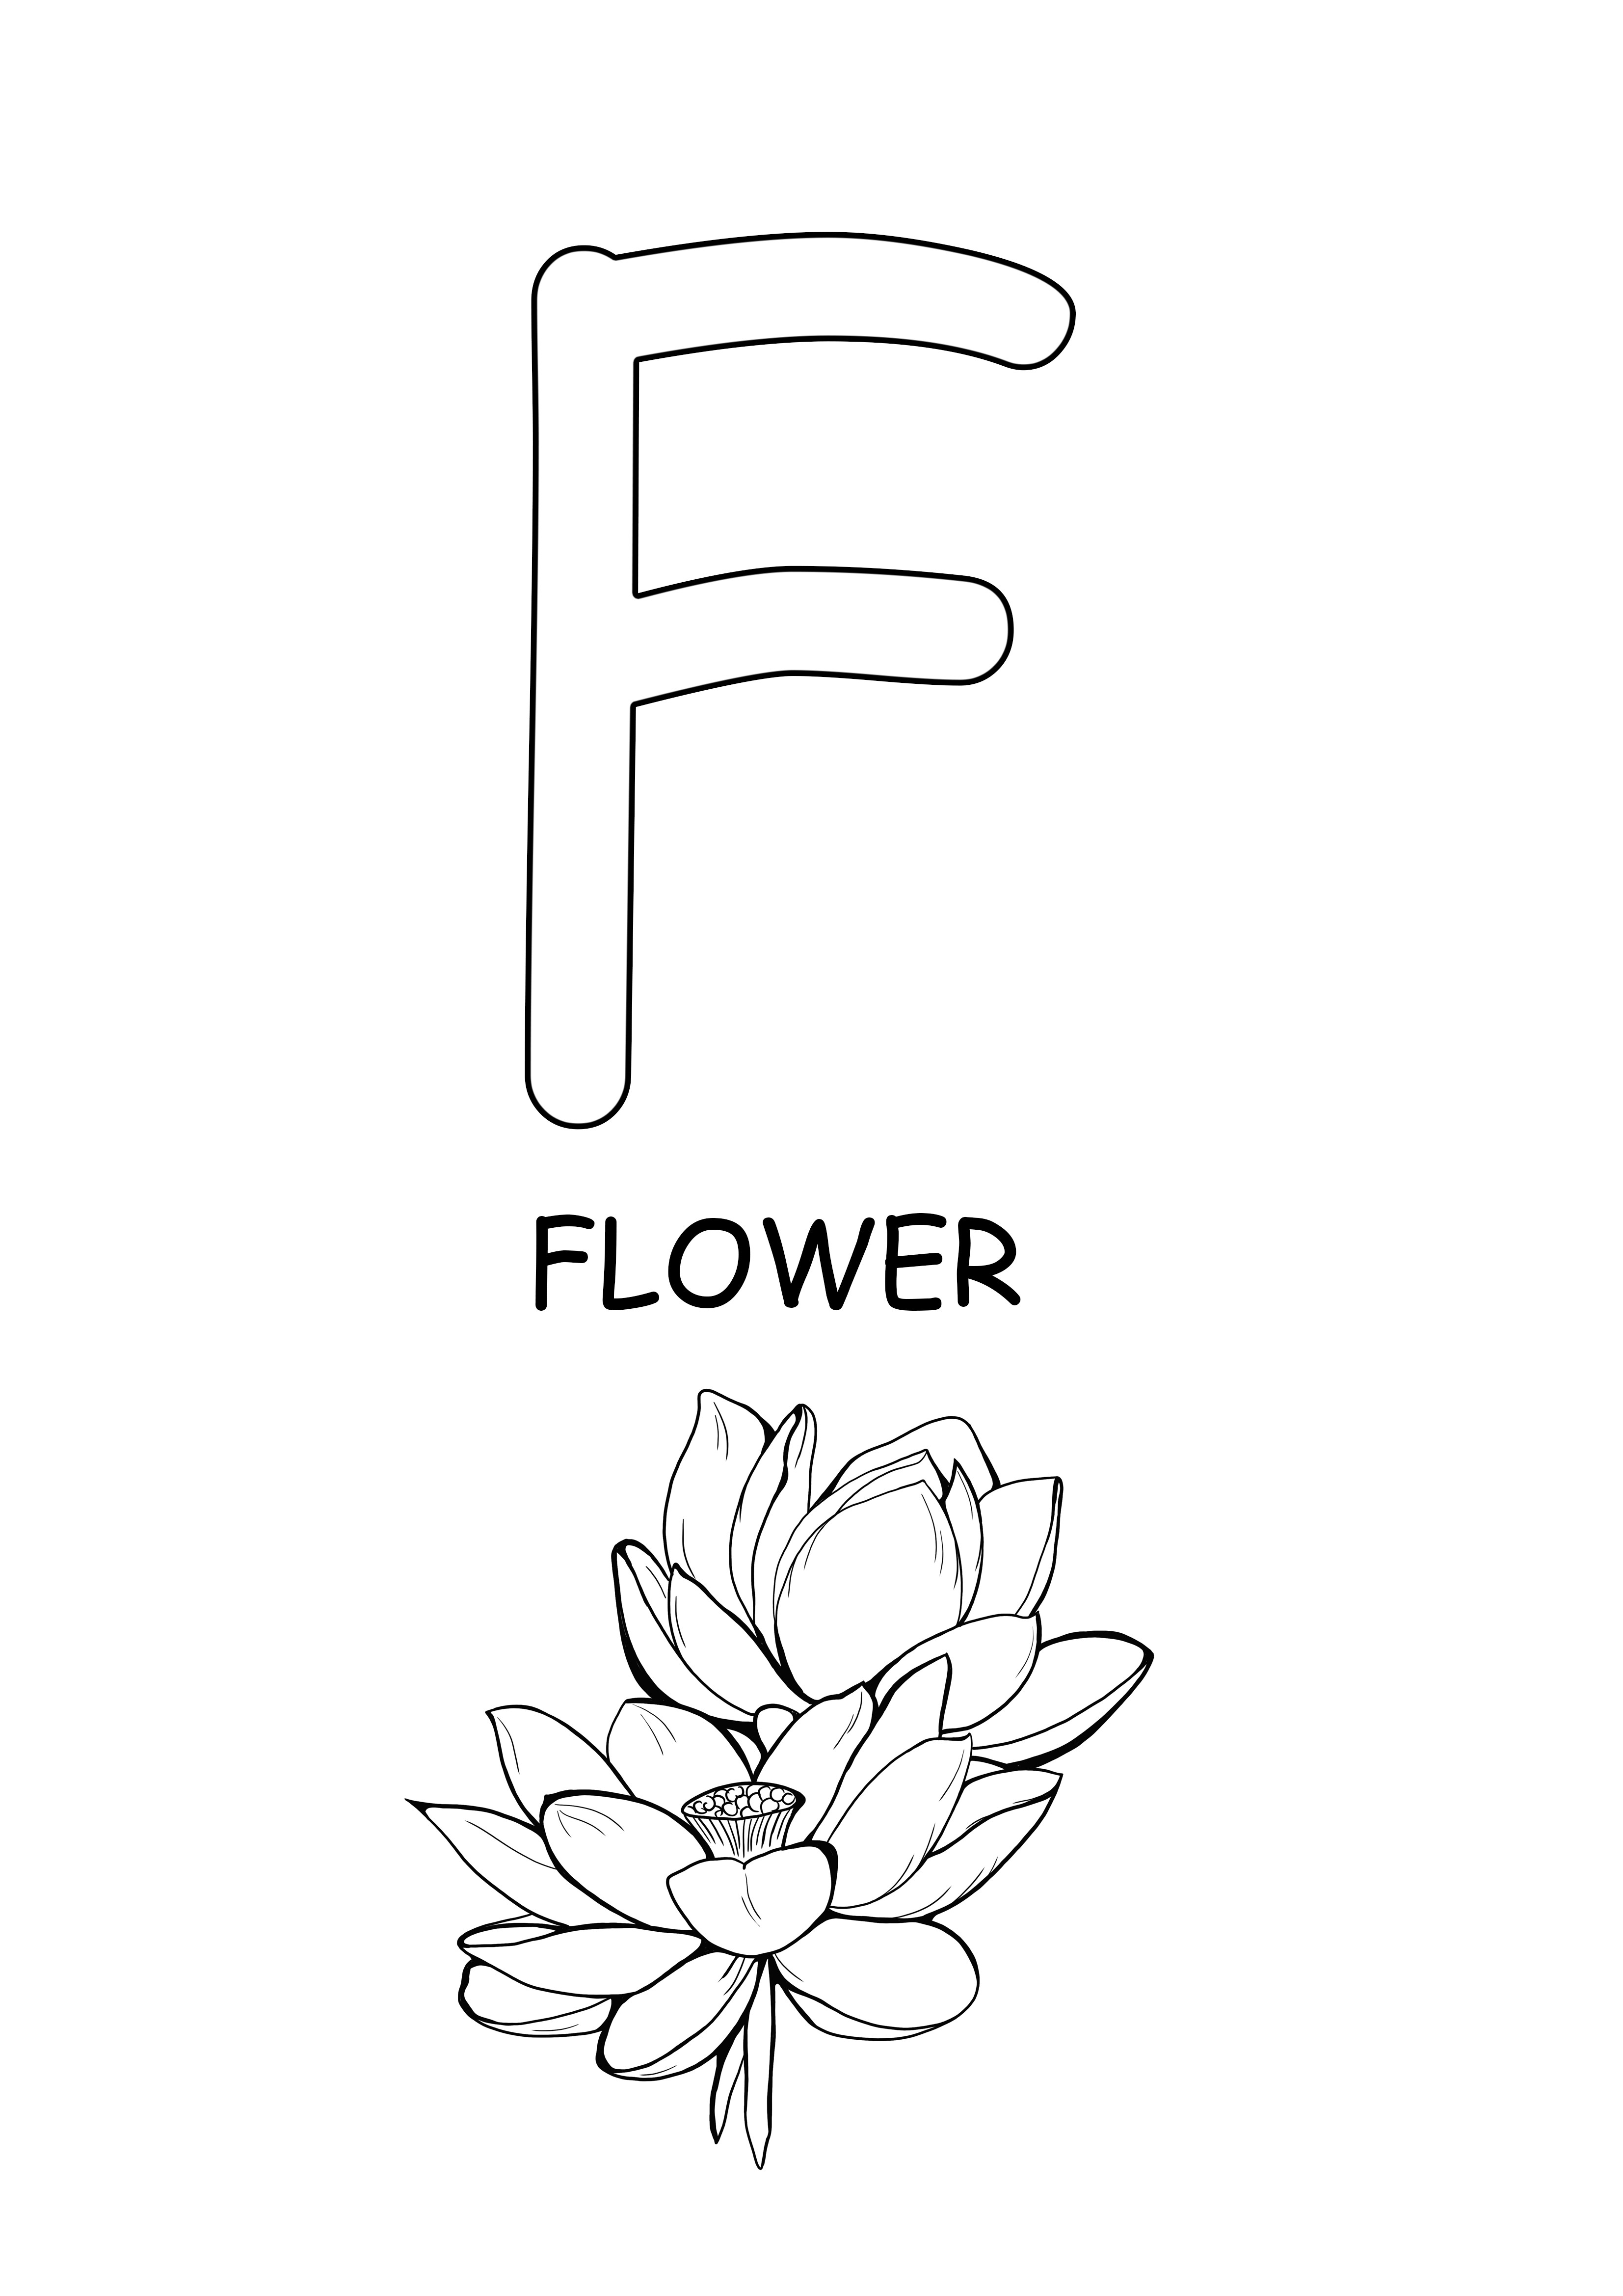 büyük harfli kelime-çiçek renklendirmek ve ücretsiz kelime için yazdırmak